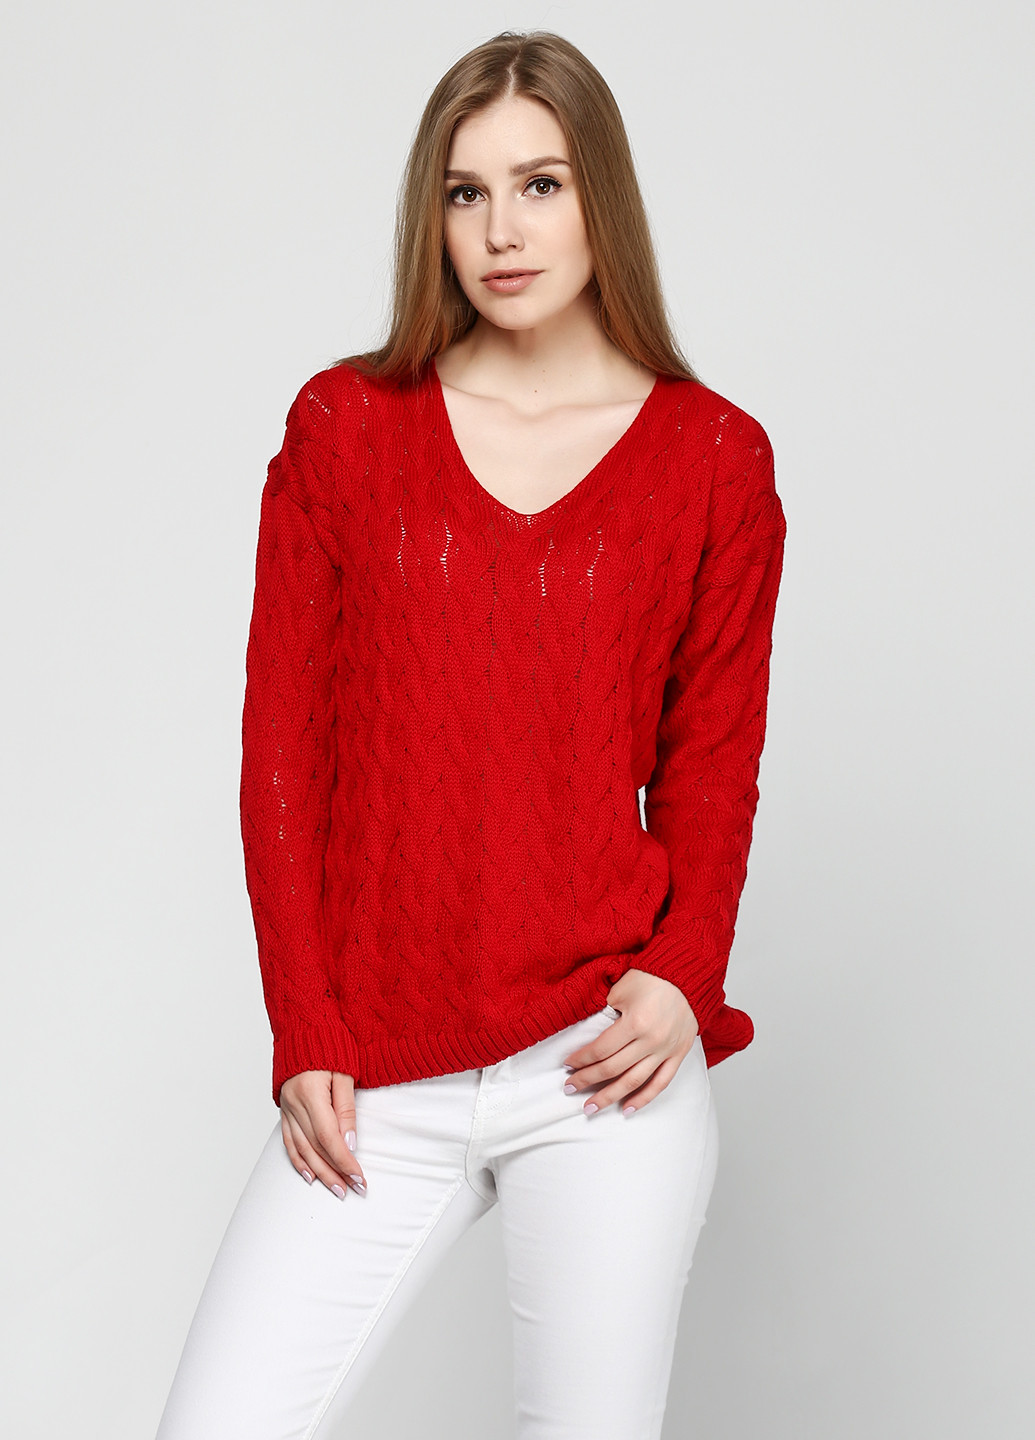 Красный демисезонный пуловер пуловер Zaldiz